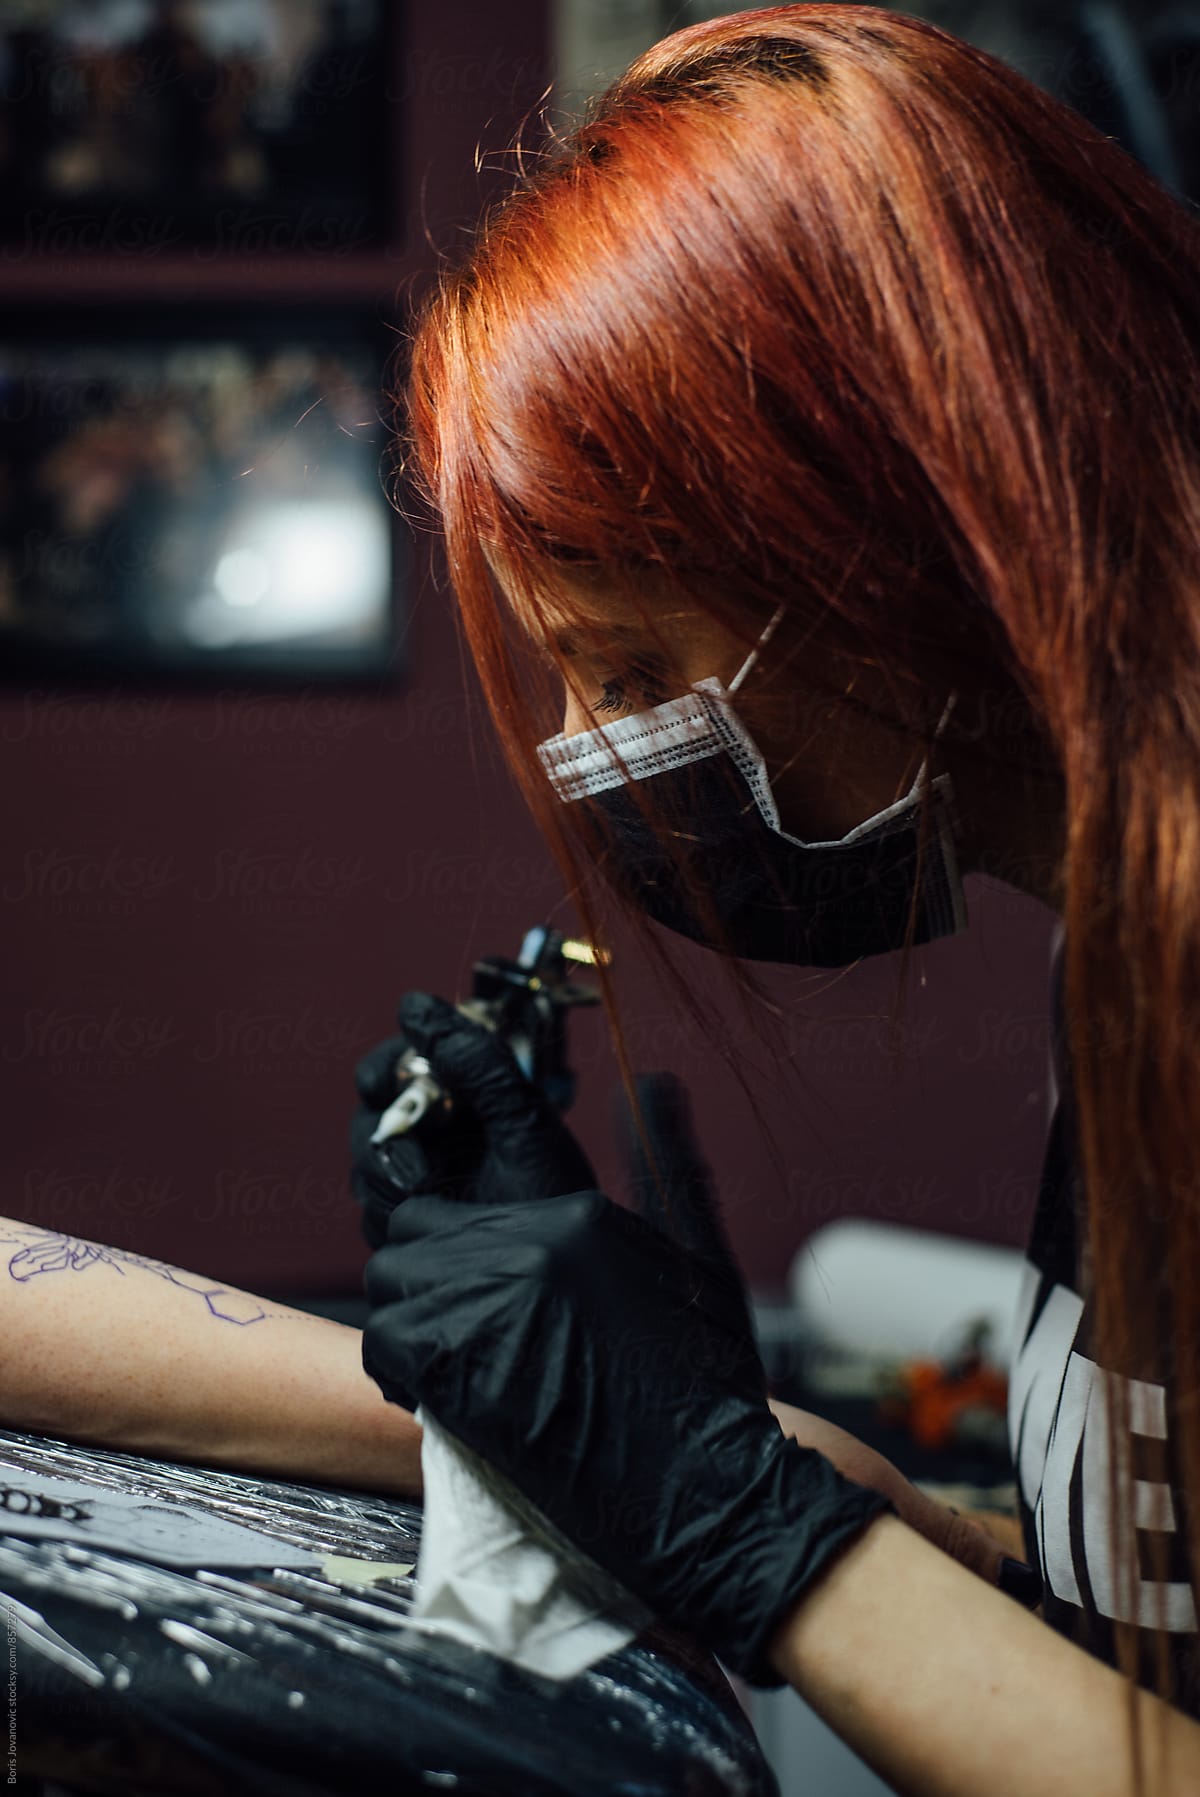 Tattoo artist working on a tattoo